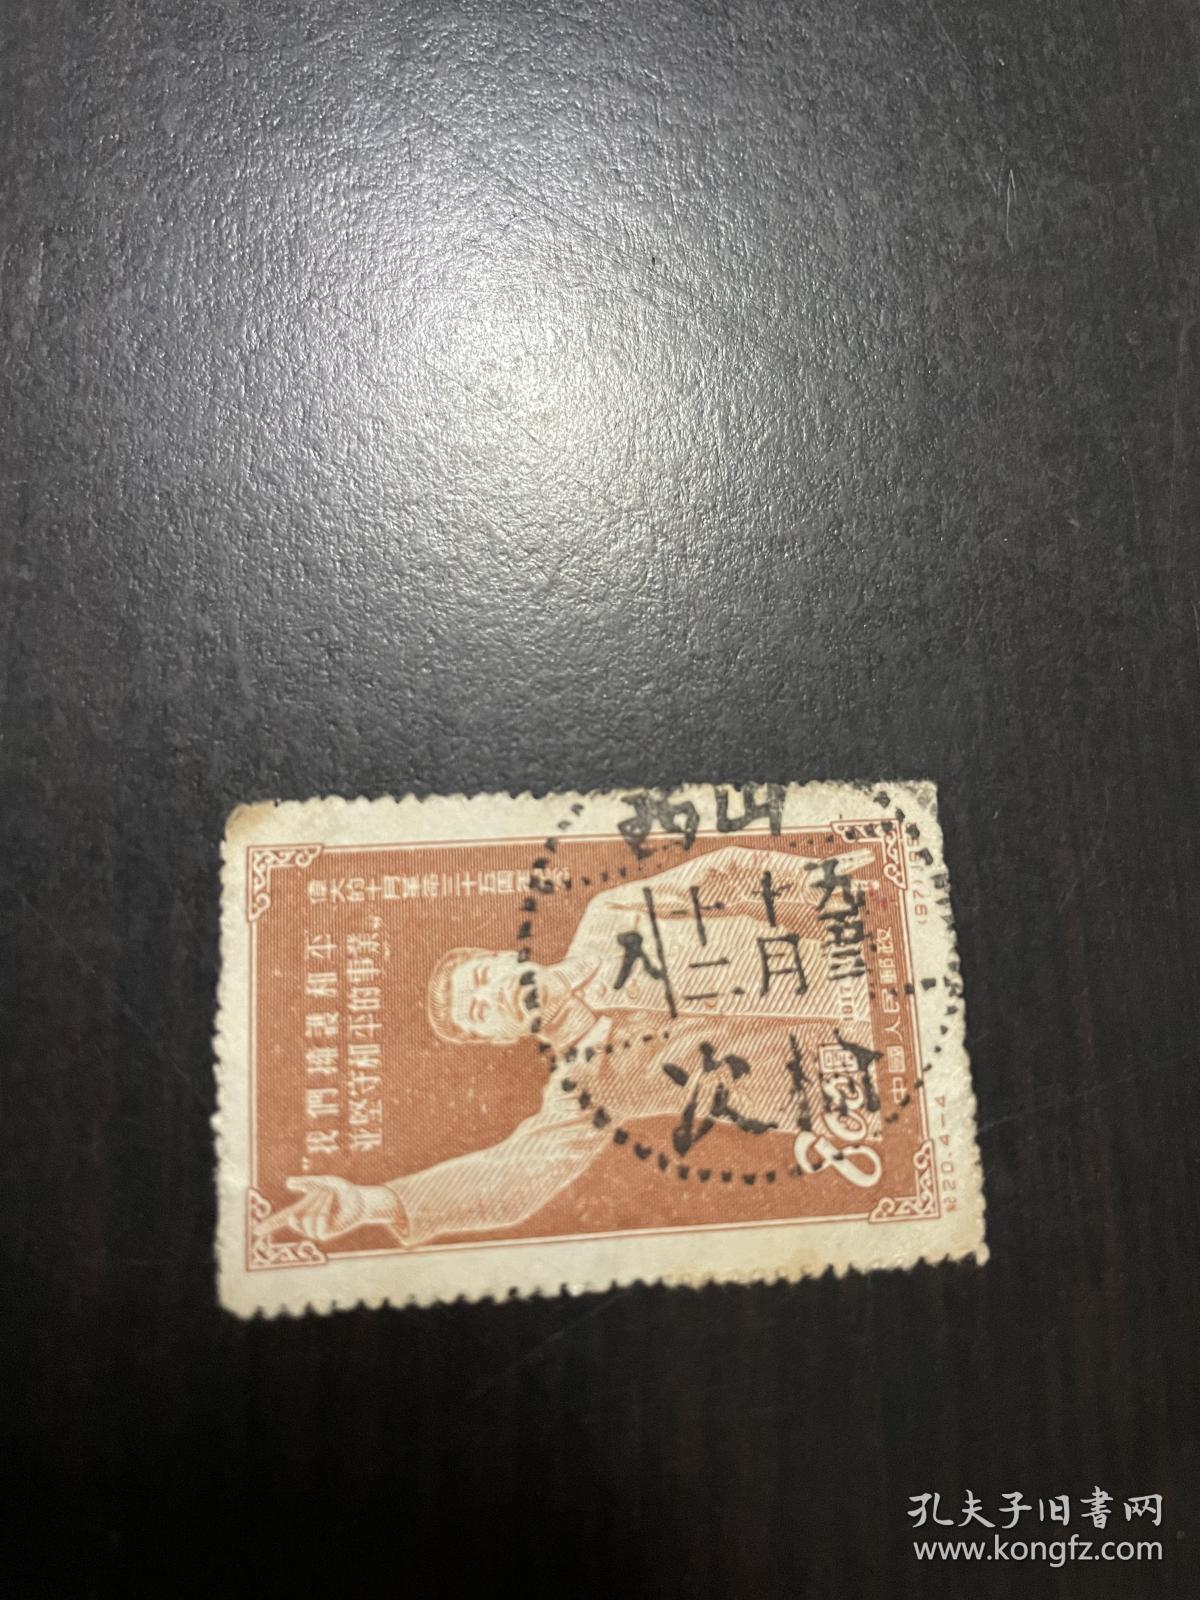 纪20邮票信销票旧票 斯大林招手 山西榆次全戳 点线戳 1953.10.12日 当月戳